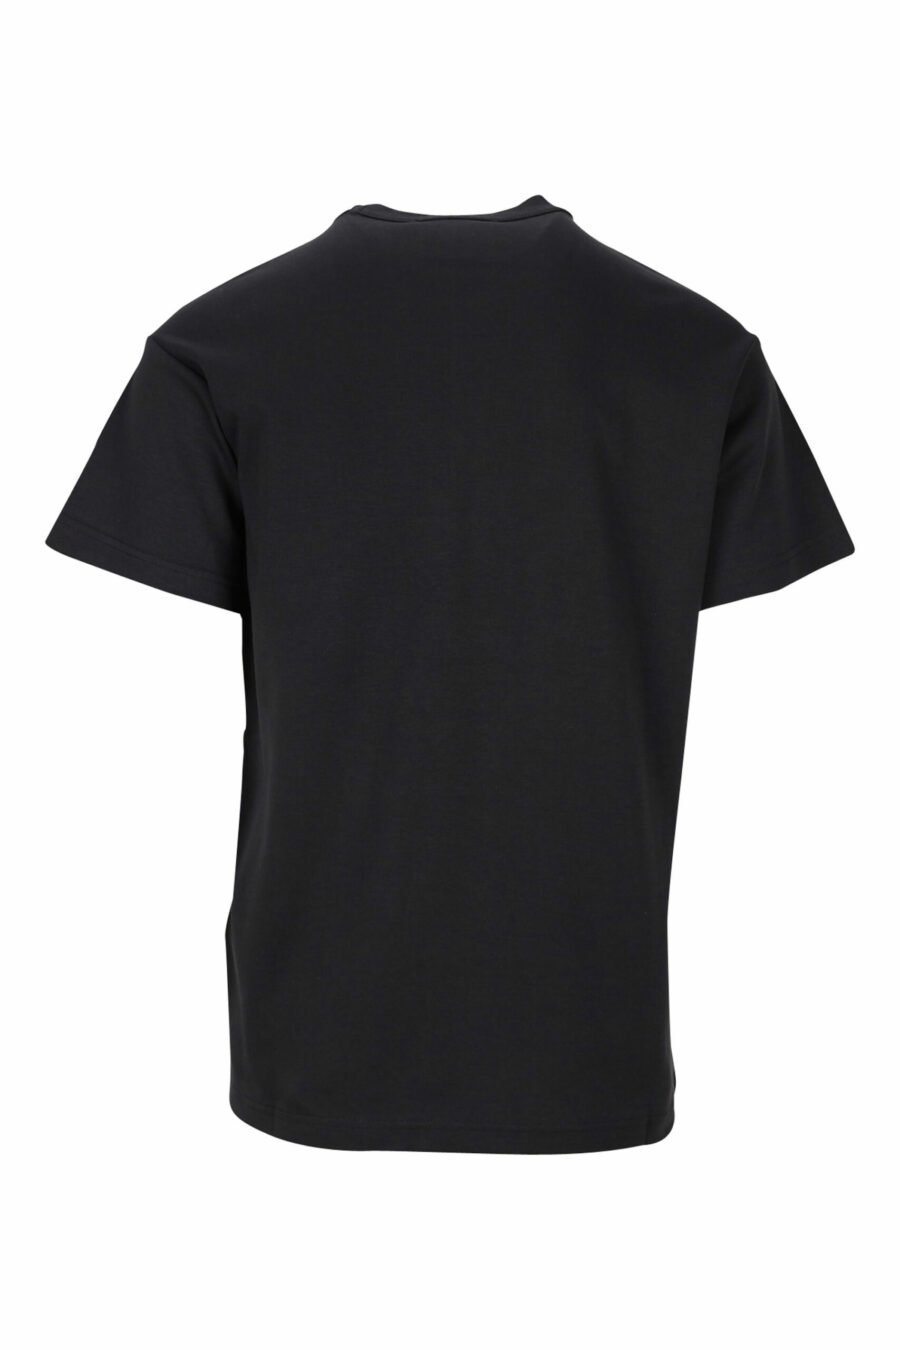 T-shirt preta com maxilogo gráfico "spry" - 8052019468816 1 à escala